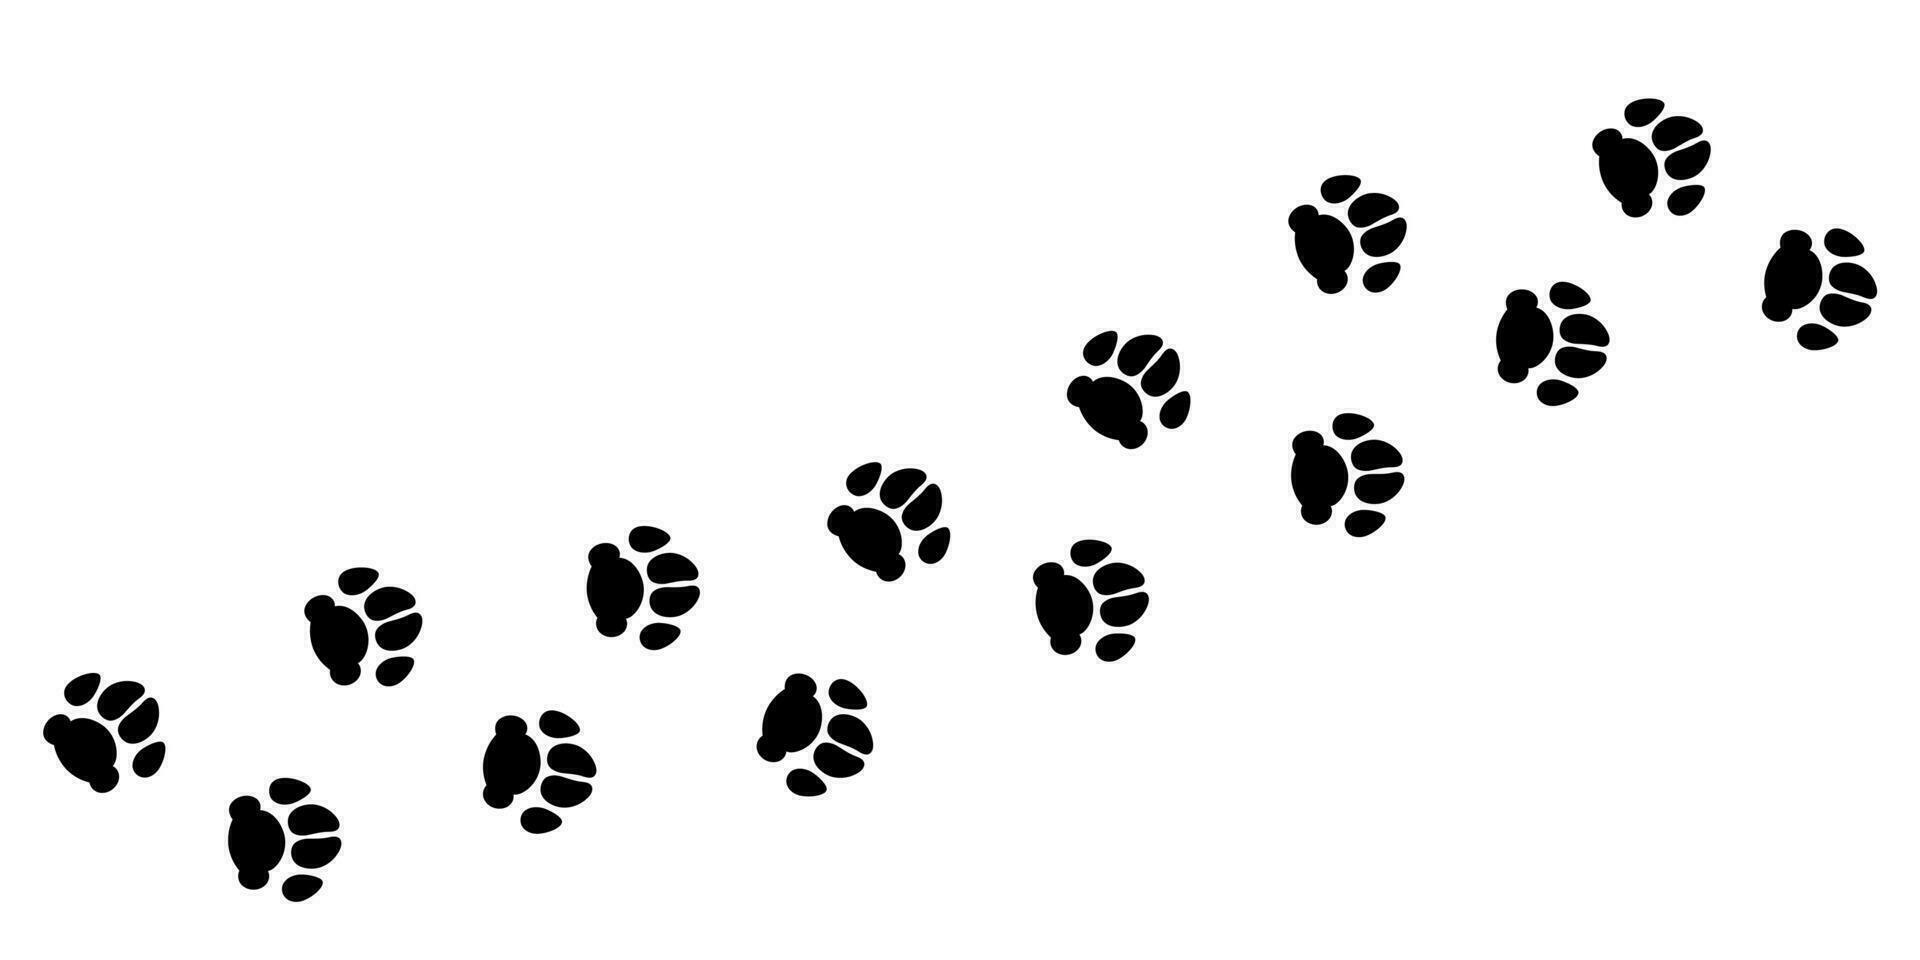 Haustier Pfote druckt Pfad. inländisch Hund oder Hündchen schwarz Fußabdrücke Silhouetten Vektor Illustration auf Weiß Hintergrund.